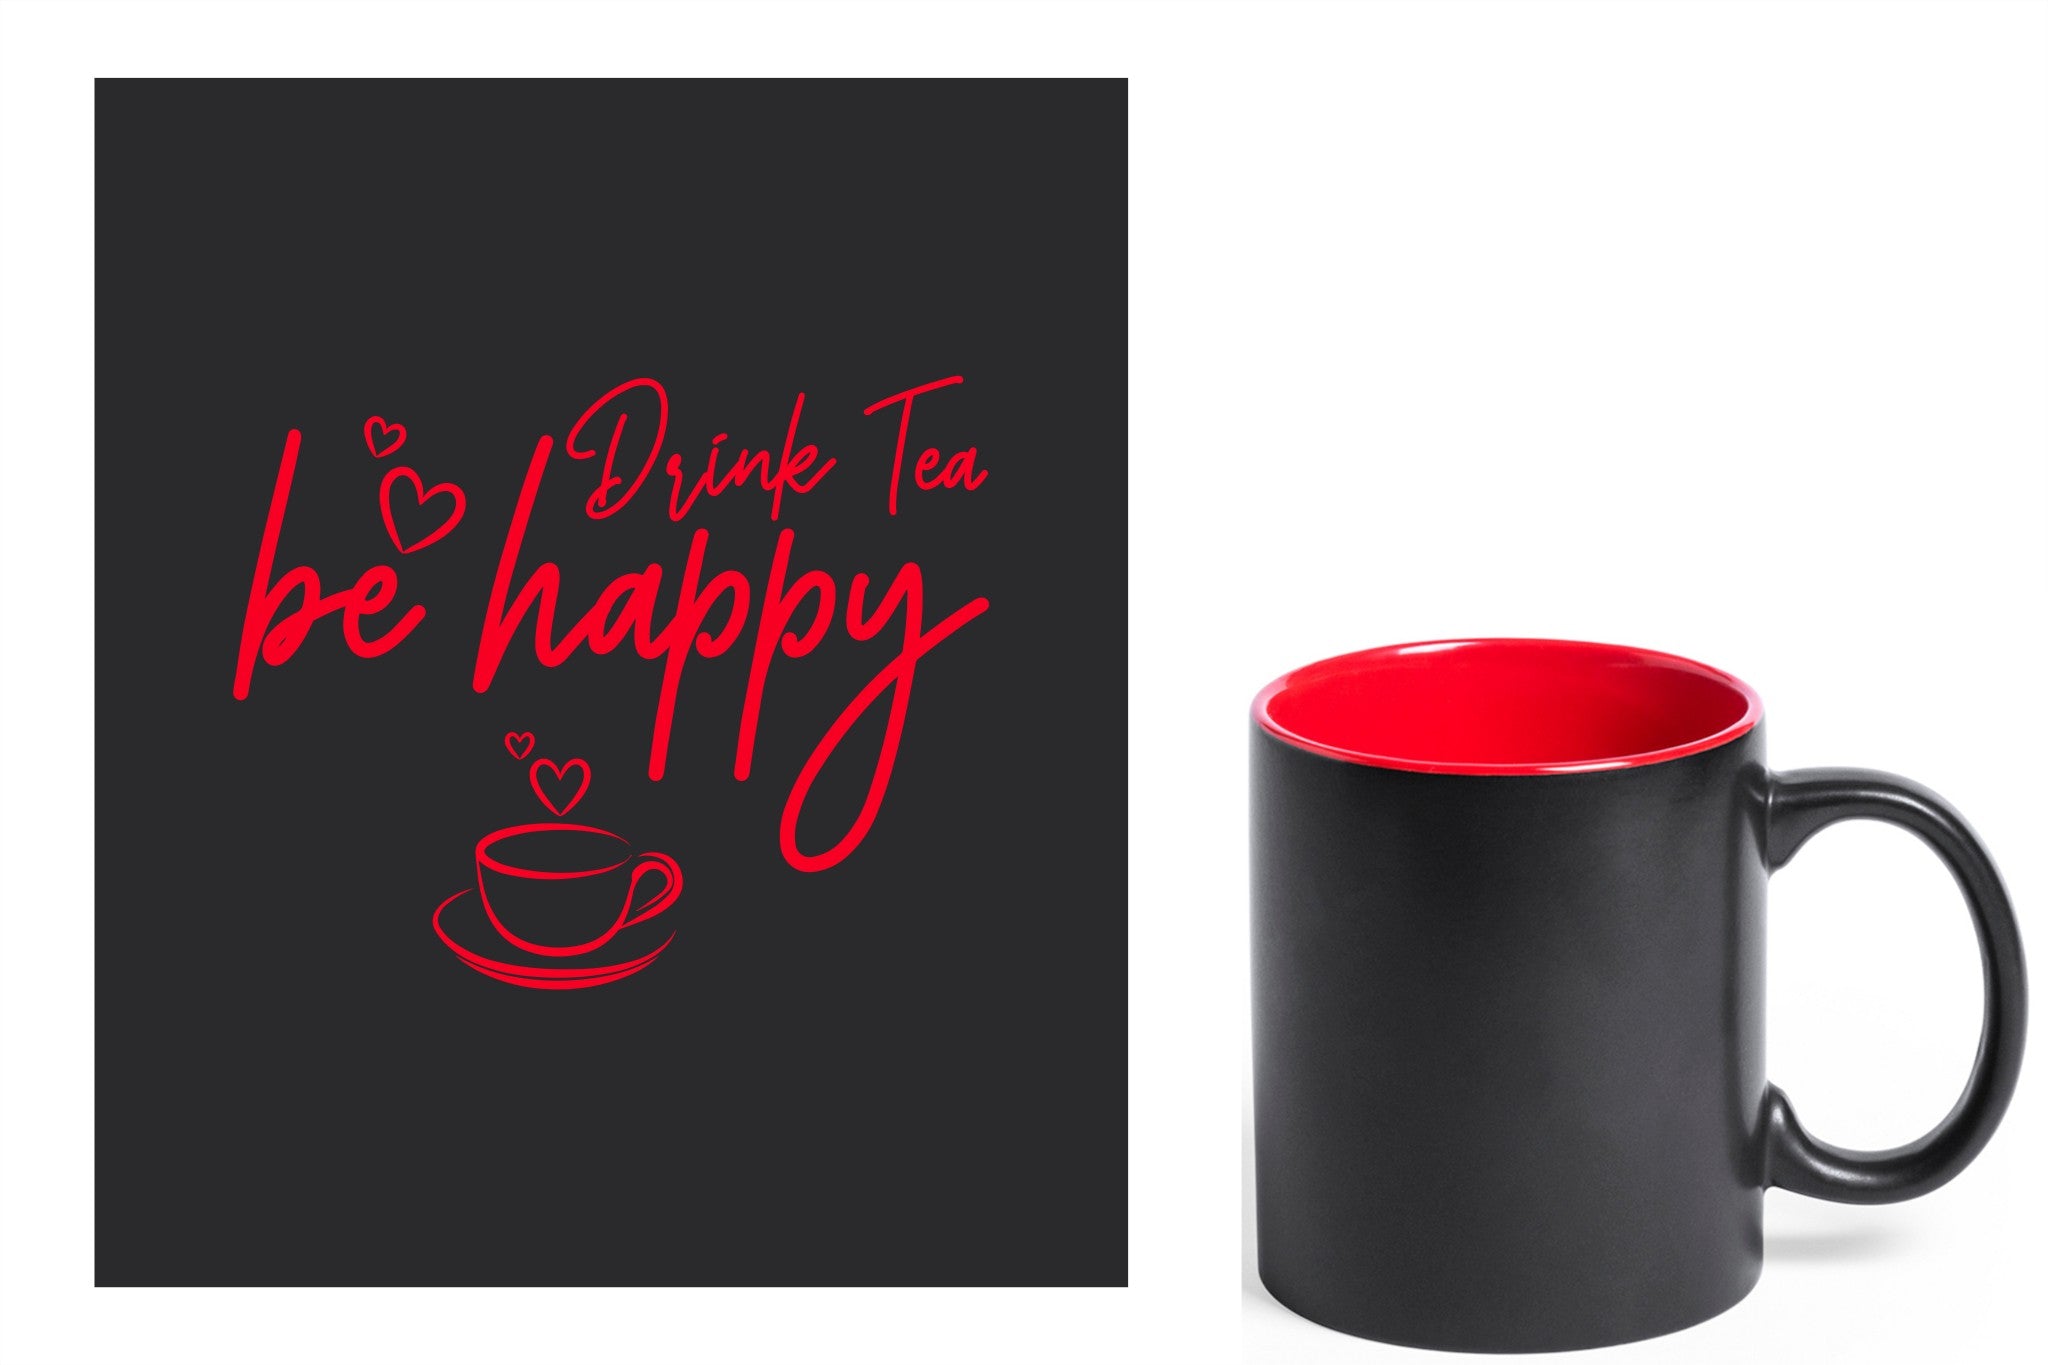 zwarte keramische mok met rode gravure  'Be happy drink tea'.